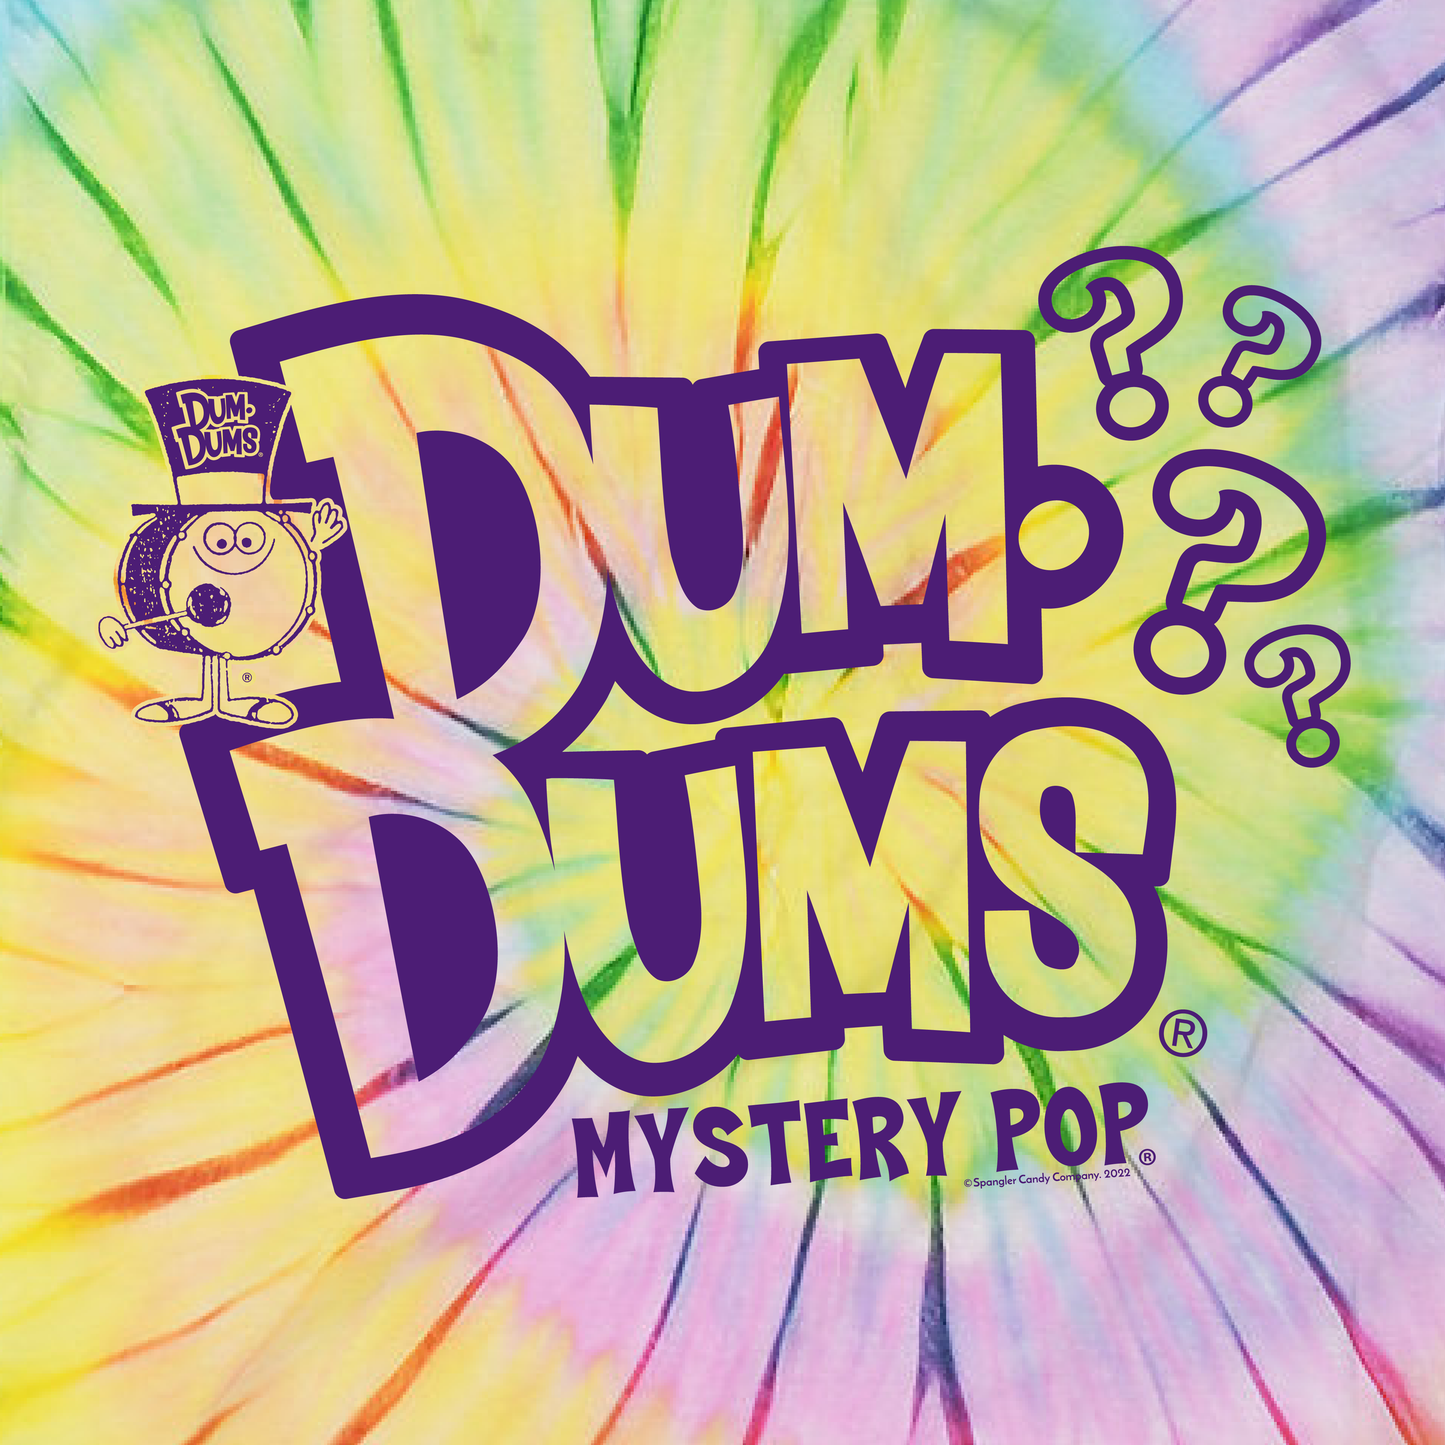 Dum-Dums ® Mystery Flavor Pop Unisex Tie-Dye Shirt | Est. in Ohio Shirt | Summer Tie-Dye